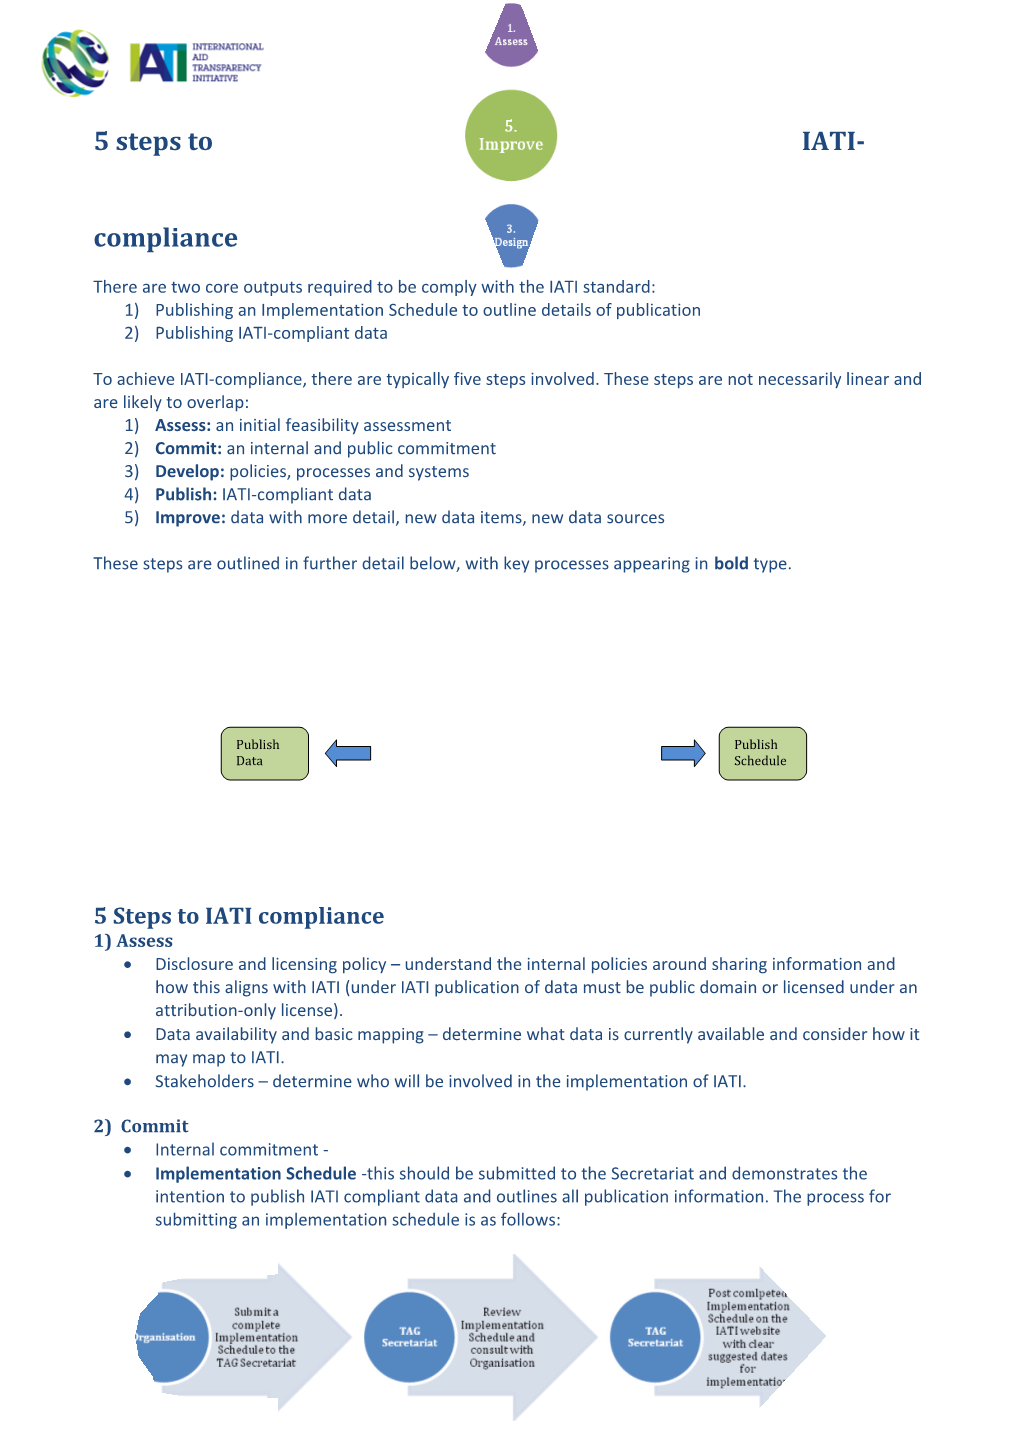 5 Steps to IATI-Compliance